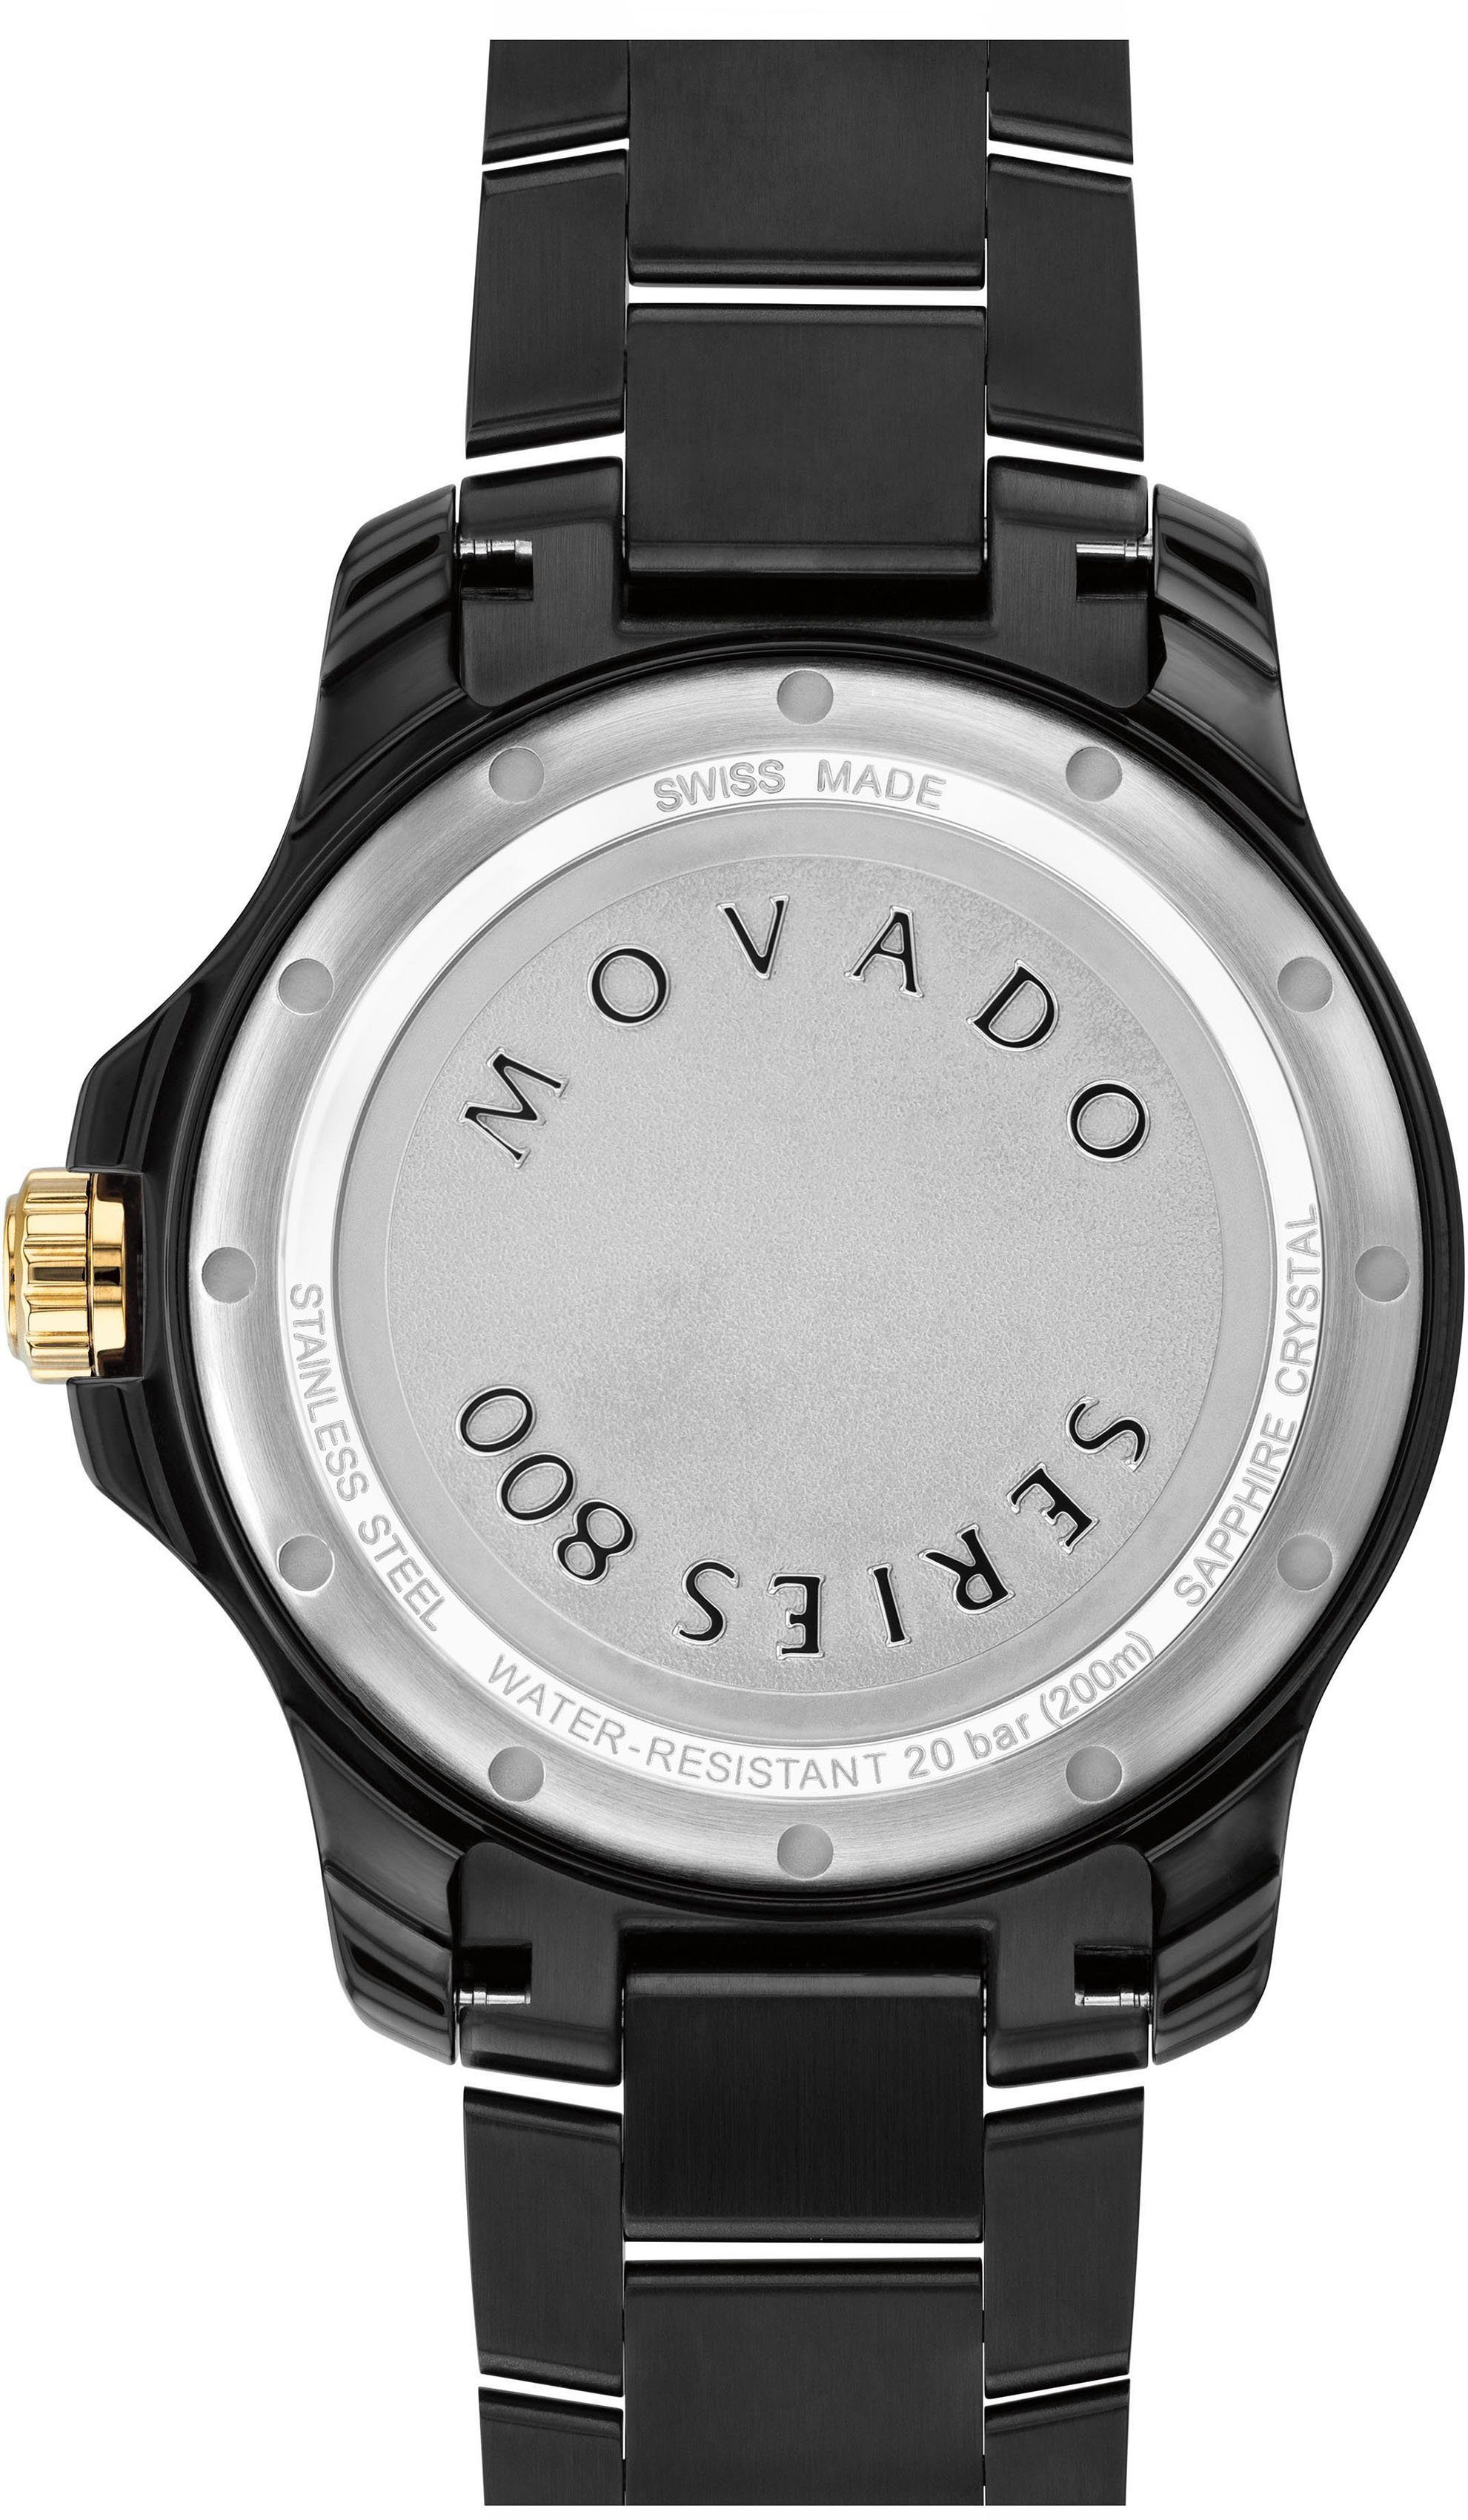 MOVADO Schweizer Uhr Series 800, 2600161